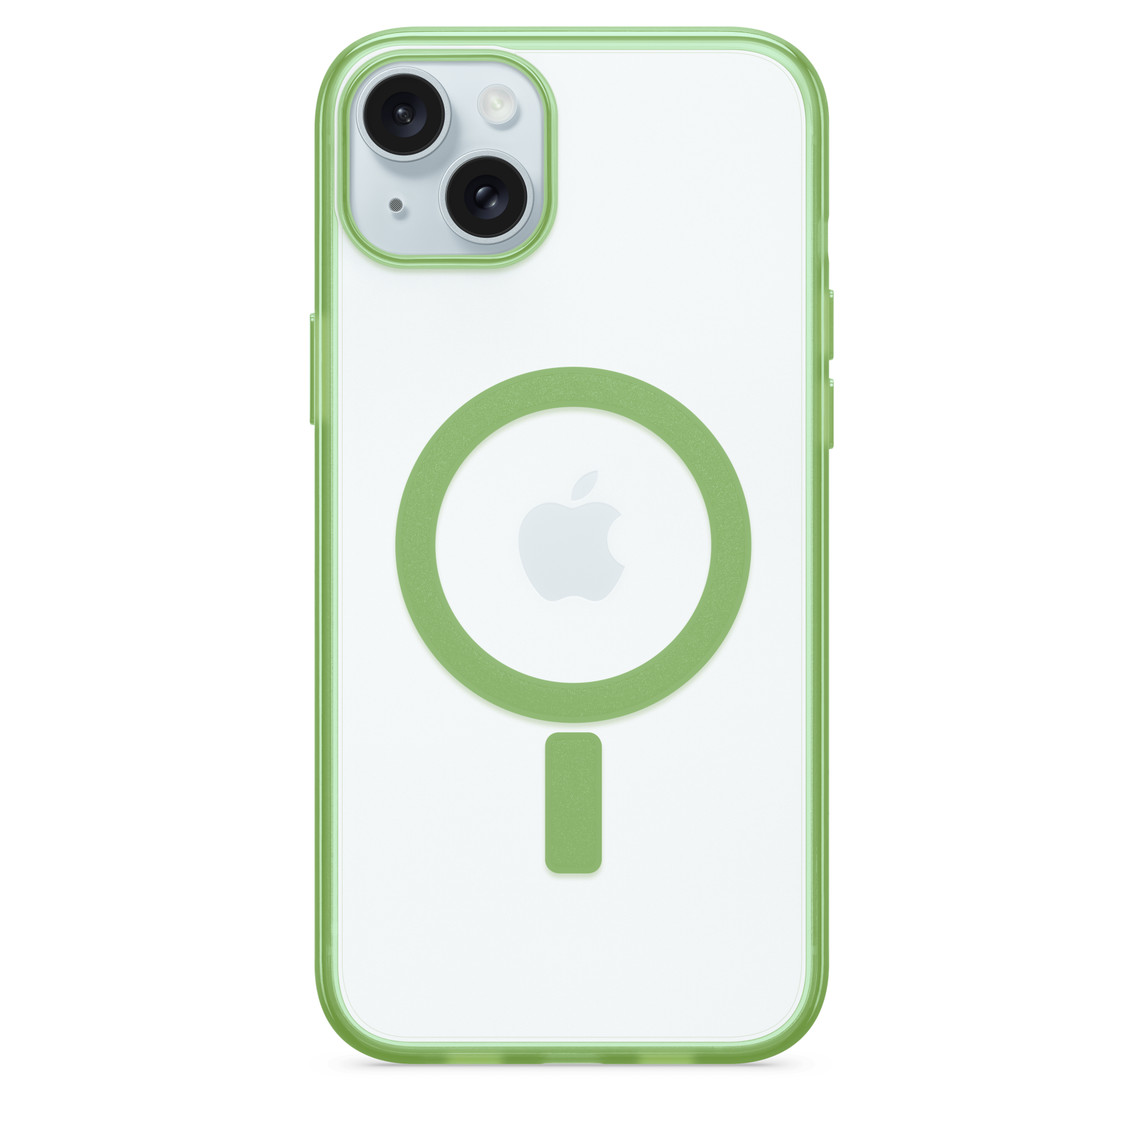 Funda Lumen Series de Otterbox para iPhone transparente con el círculo MagSafe de Apple a juego colocada en un iPhone 15 Plus.